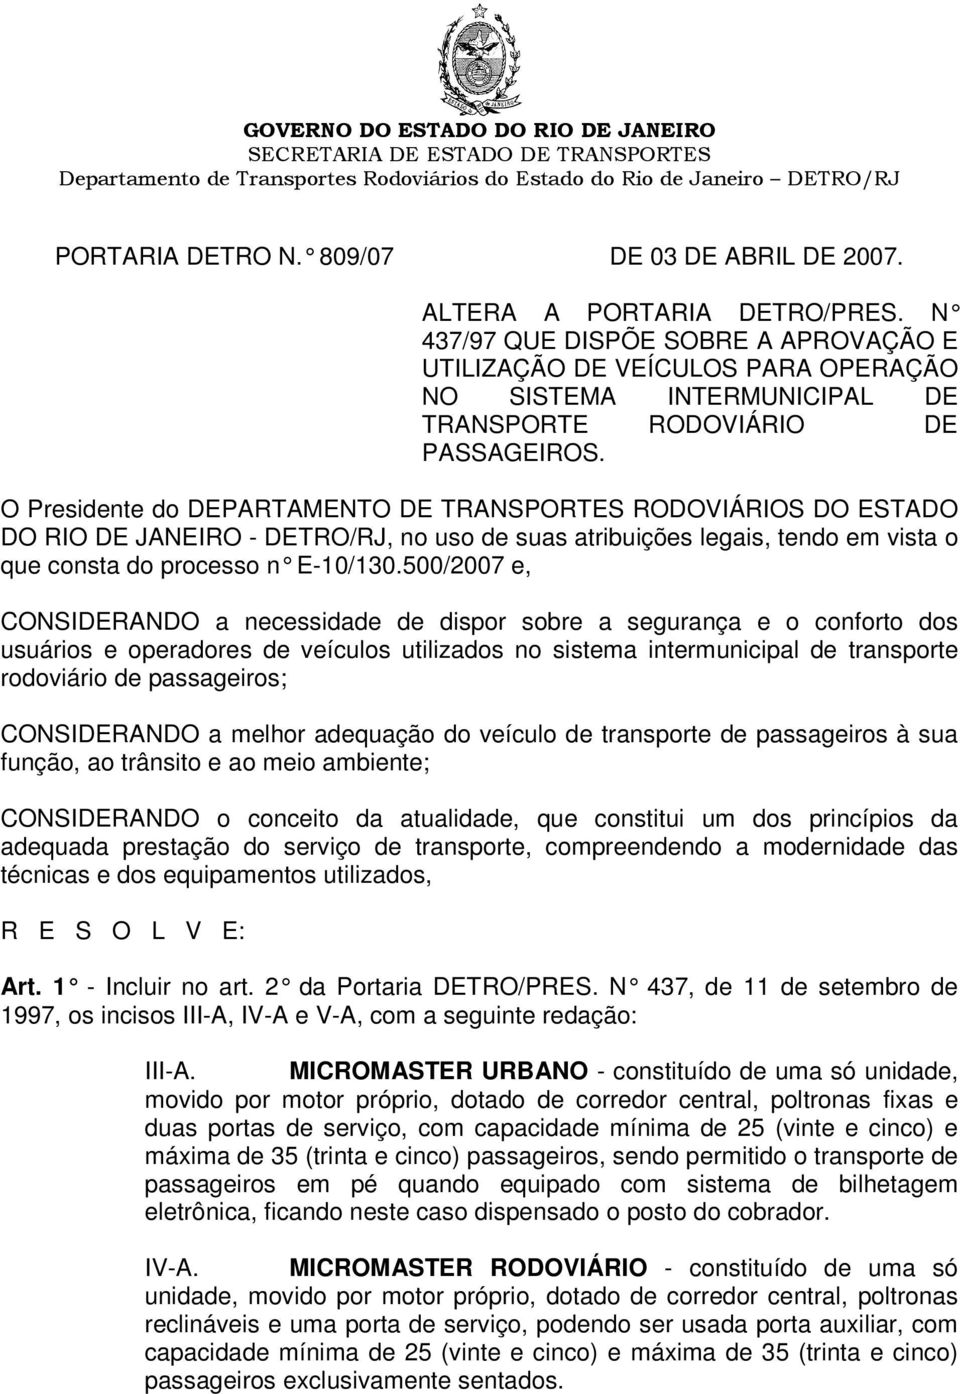 O Presidente do DEPARTAMENTO DE TRANSPORTES RODOVIÁRIOS DO ESTADO DO RIO DE JANEIRO - DETRO/RJ, no uso de suas atribuições legais, tendo em vista o que consta do processo n E-10/130.